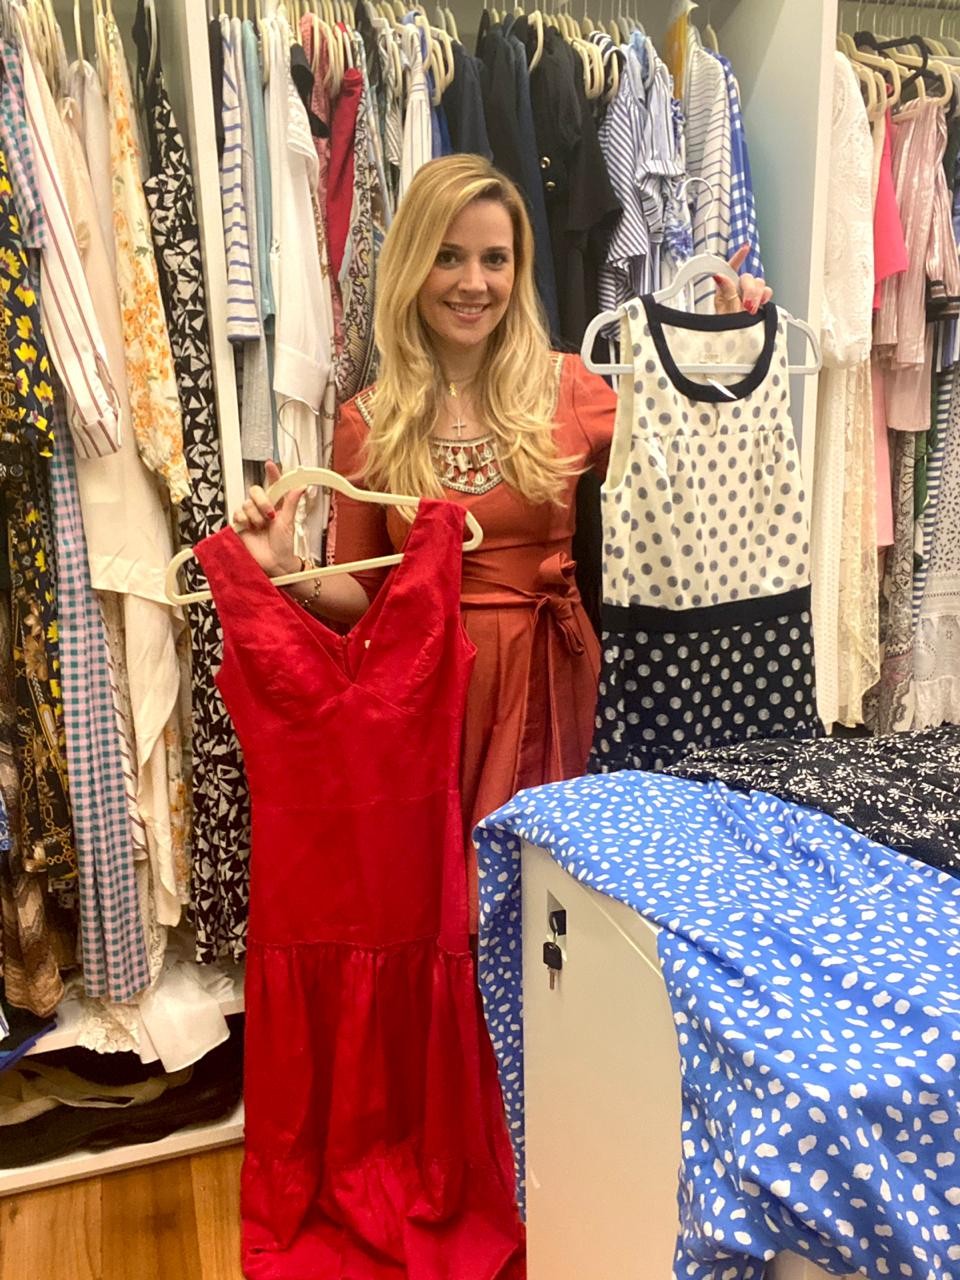 Carol criou a Buy My Dress em dezembro de 2019, ao perceber a forte demanda por vestidos (Foto: Divulgação)